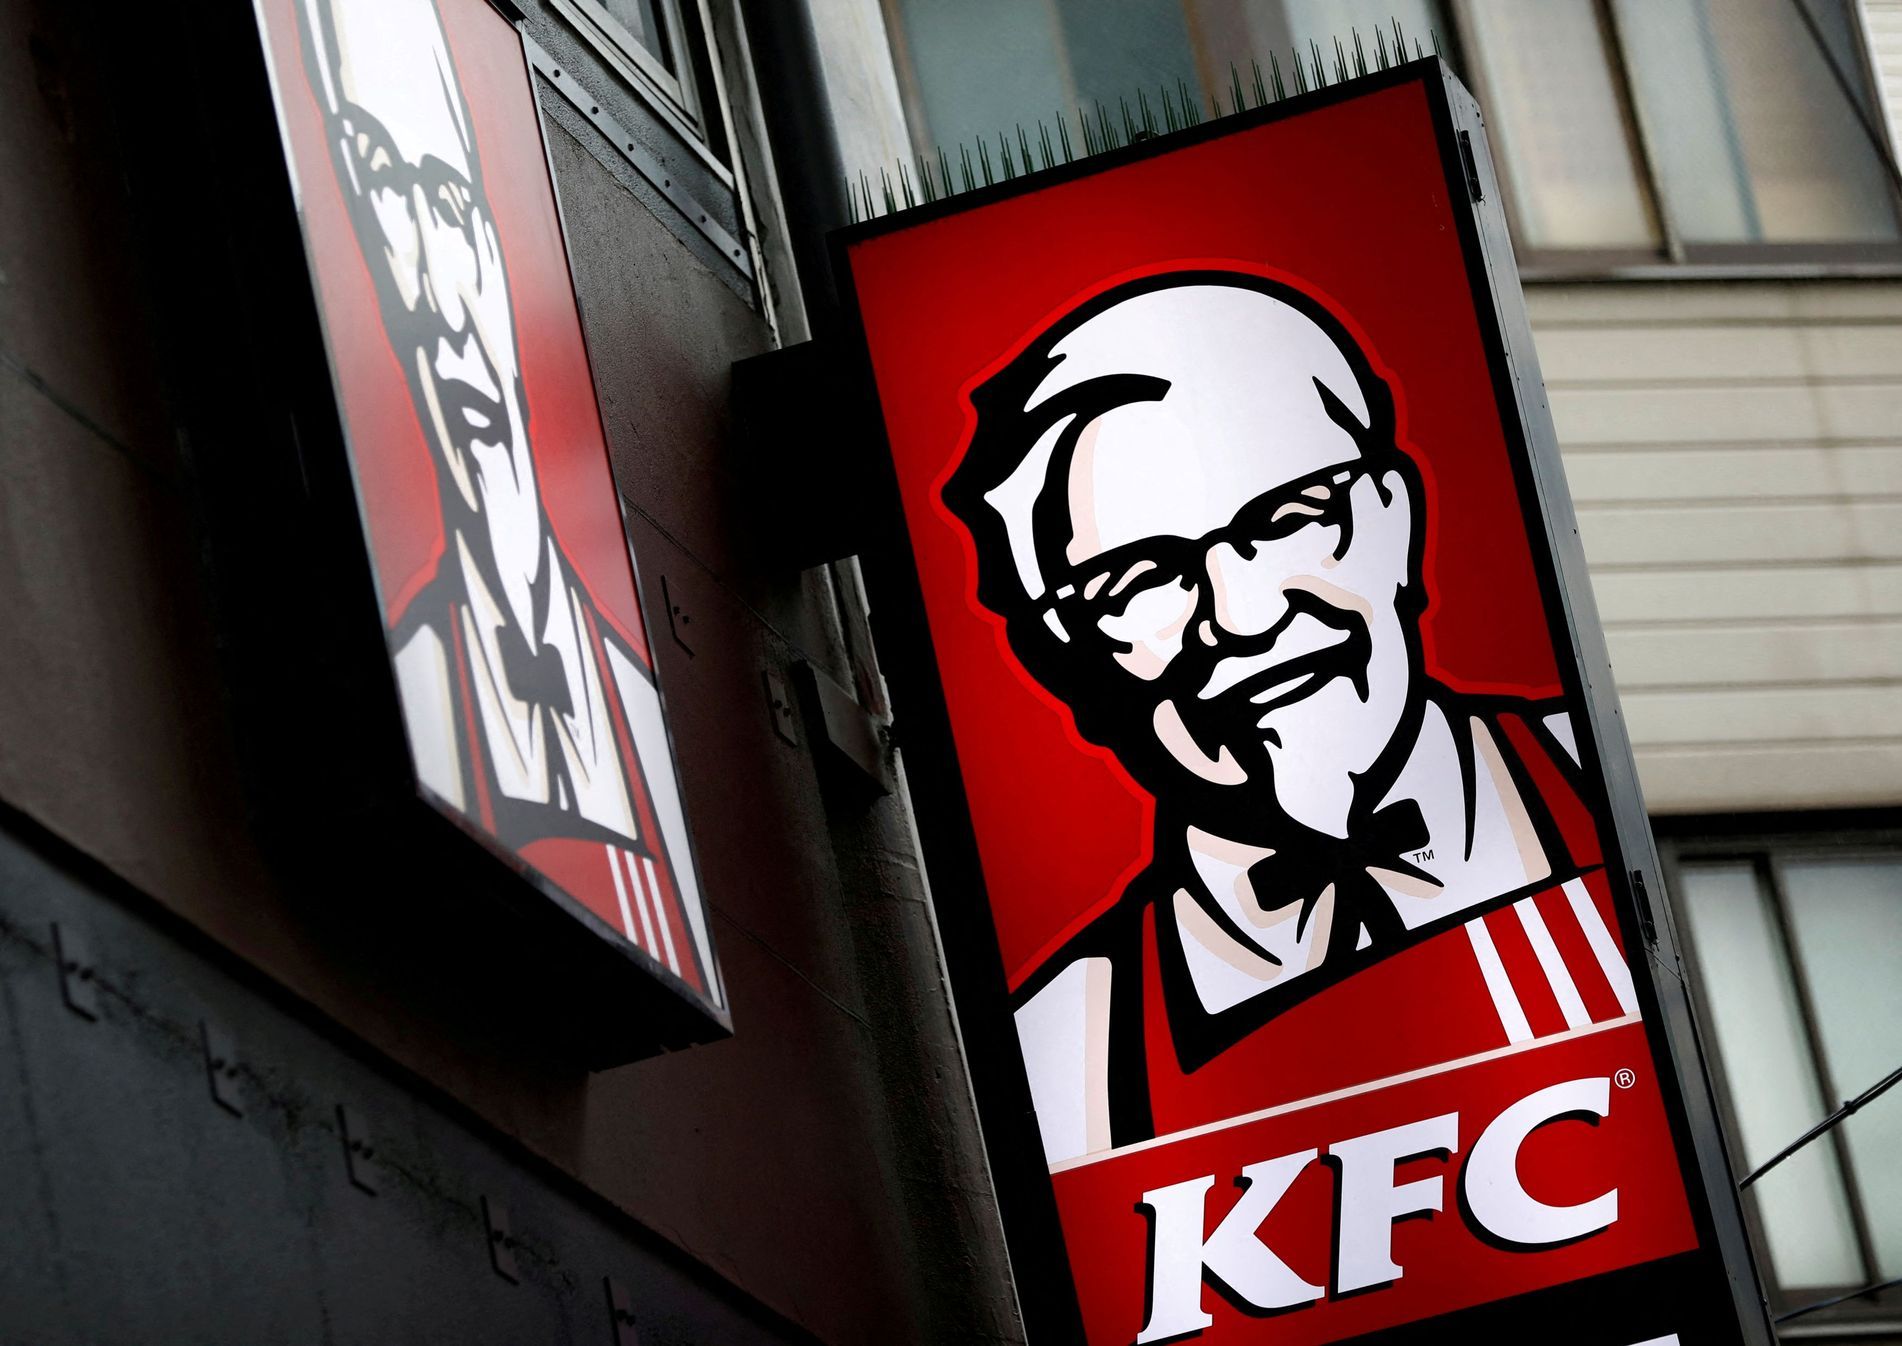 Die KFC-Kette überrascht deutsche Kunden.  In der Werbung verwendet er eine Anspielung auf die Kristallnacht